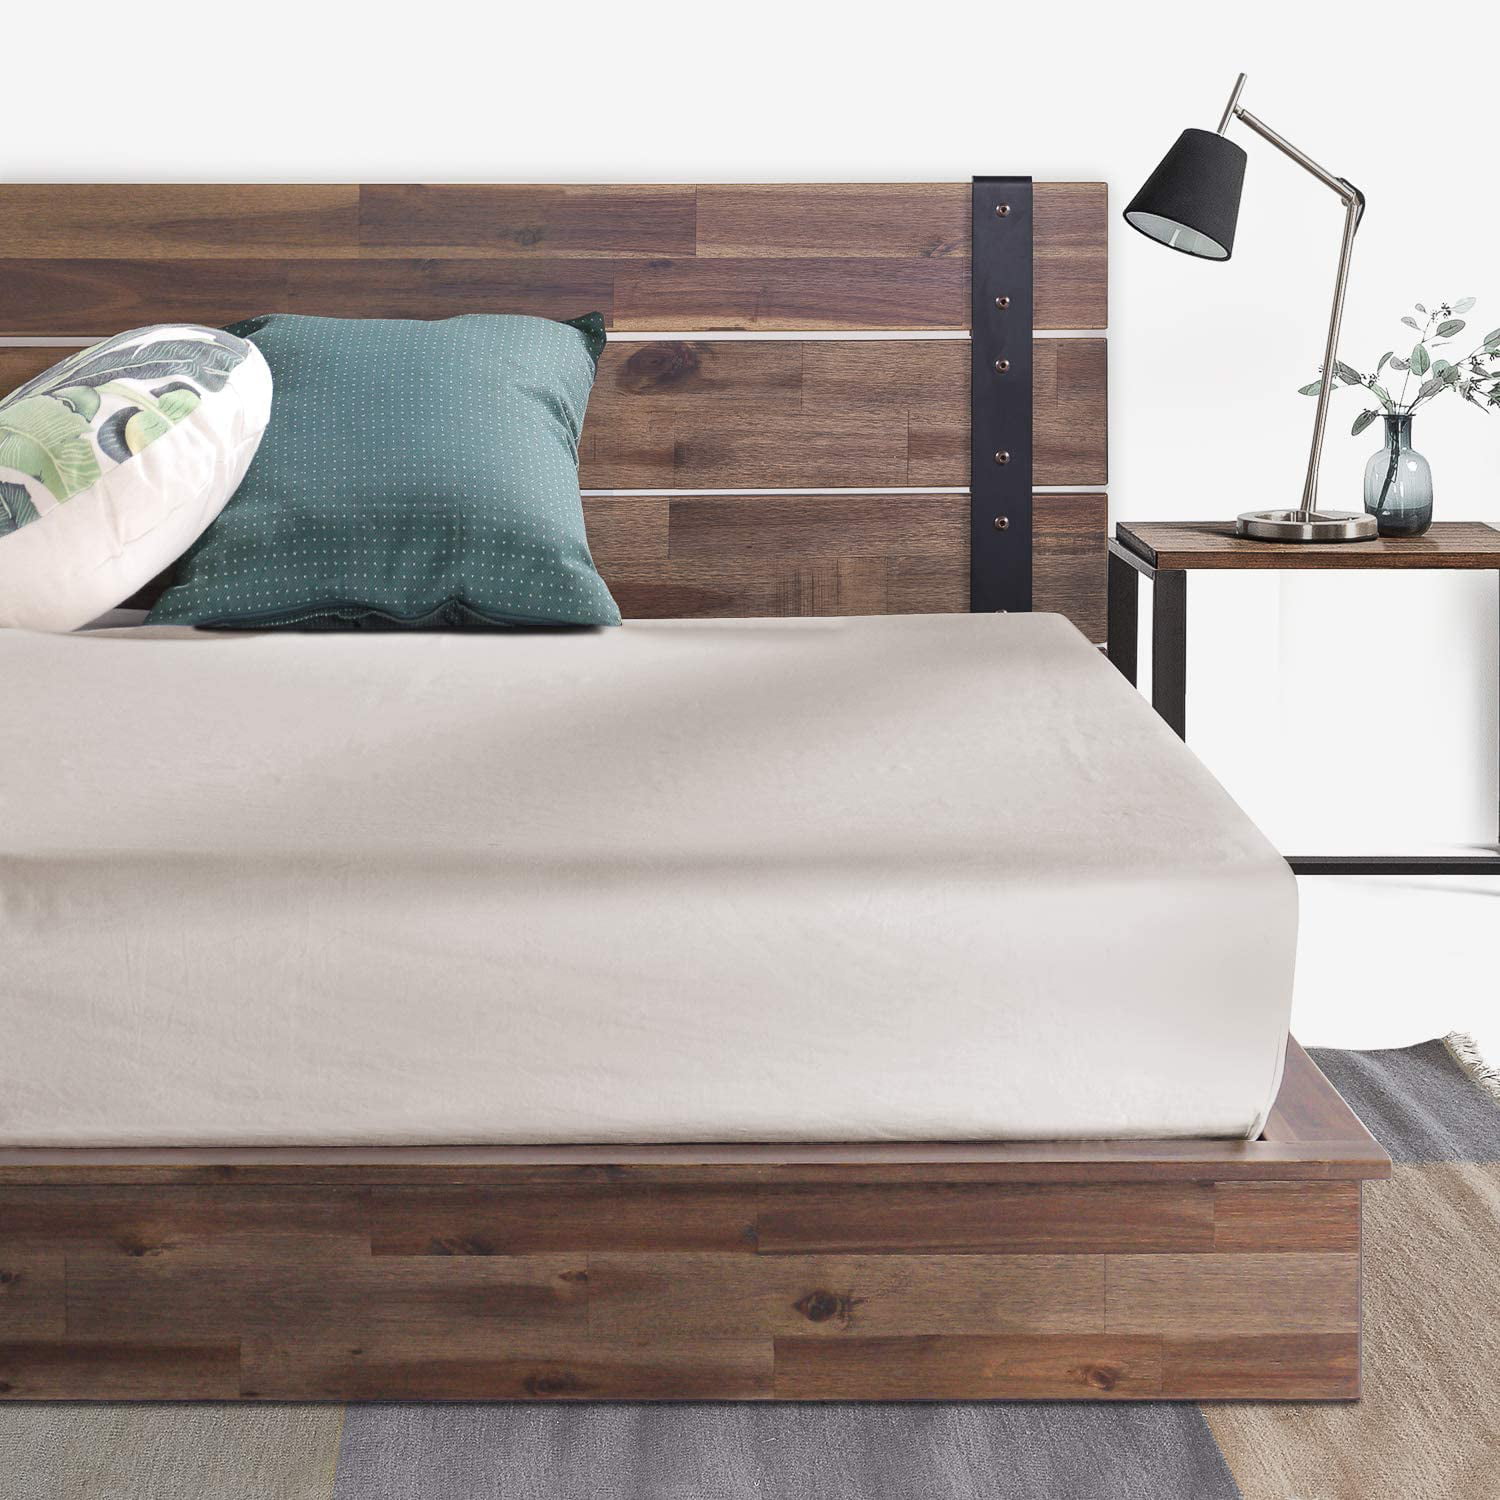 Zinus Brock Metal And Wood Platform Bed, Assembling A King Size Bed Frame